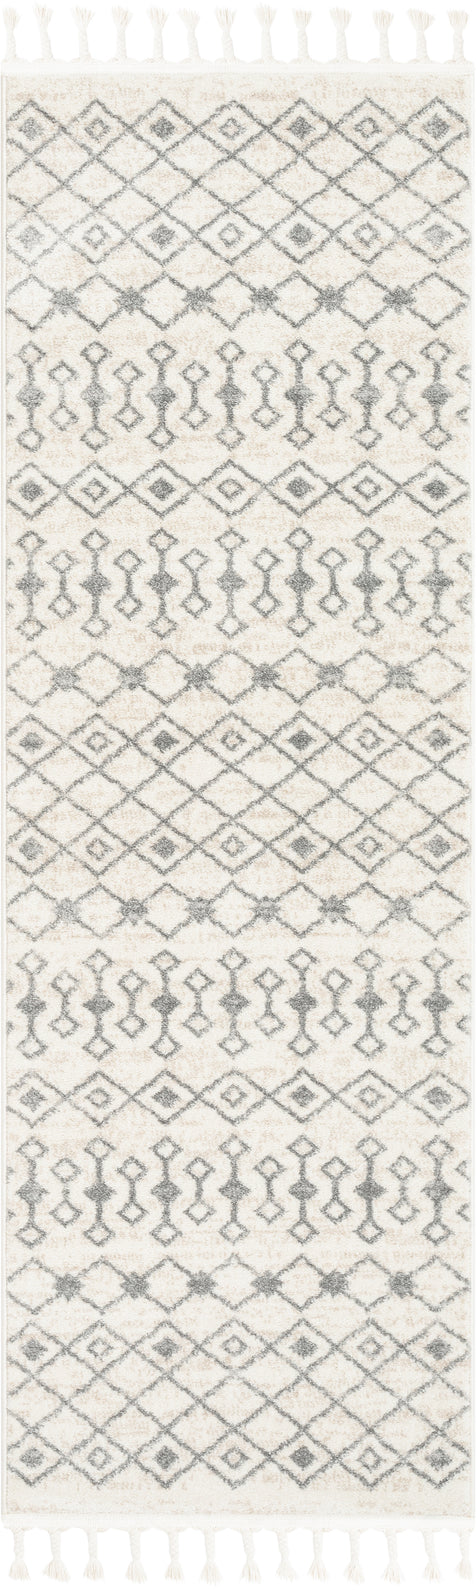 Transistora Nordic Tribal Trellis Pattern Ivory Grey Rug